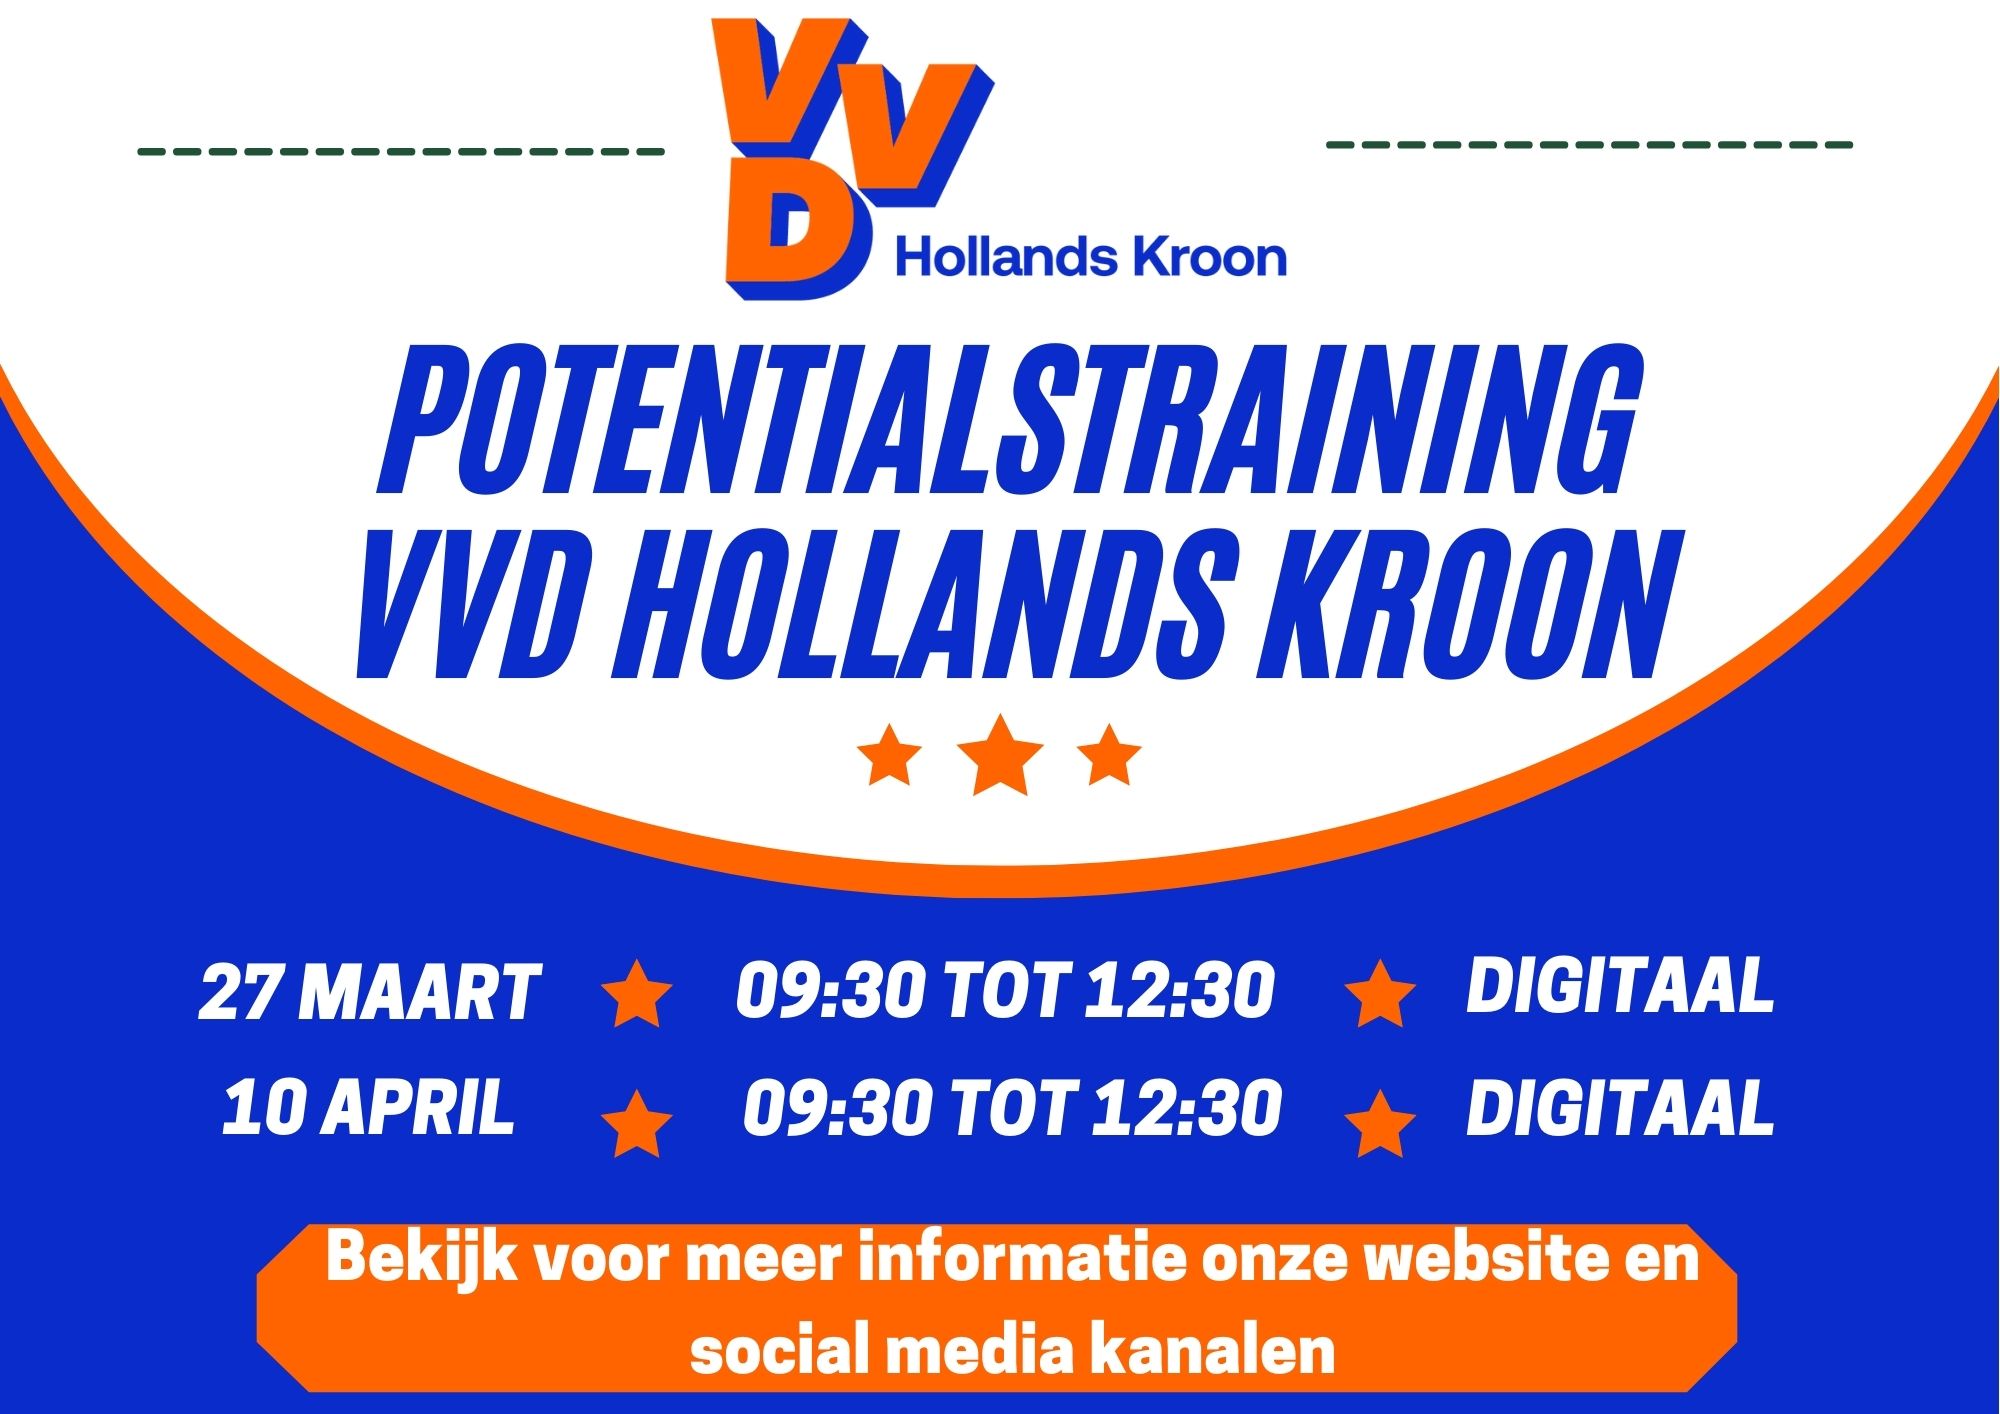 Potentialstraing VVD Hollands Kroon flyer 002